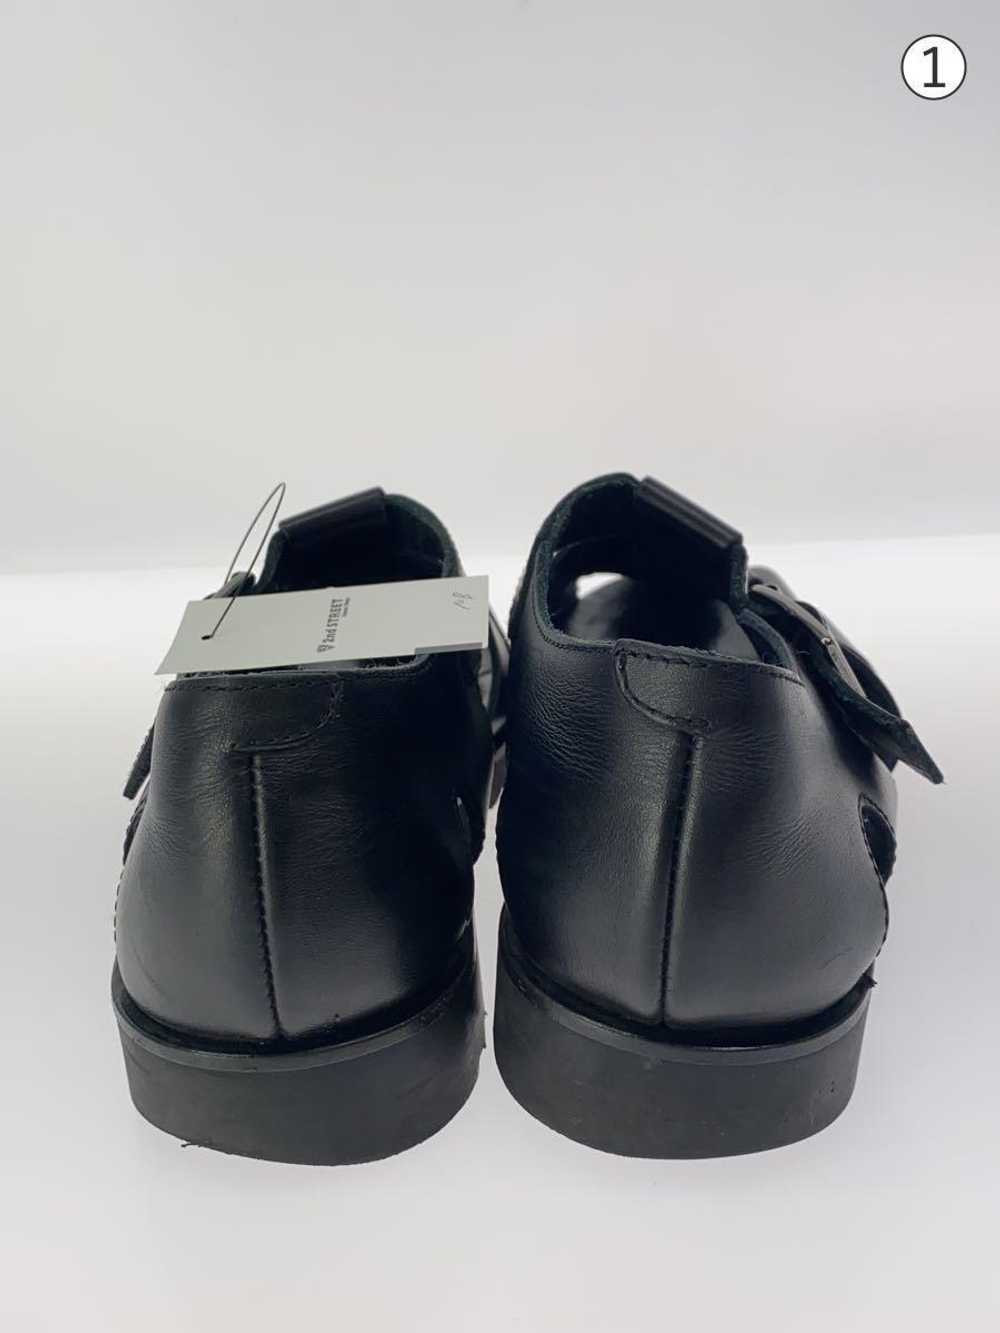 Paraboot Sandals/40/Blk/Pacific/Gurkha Shoes BUY47 - image 6